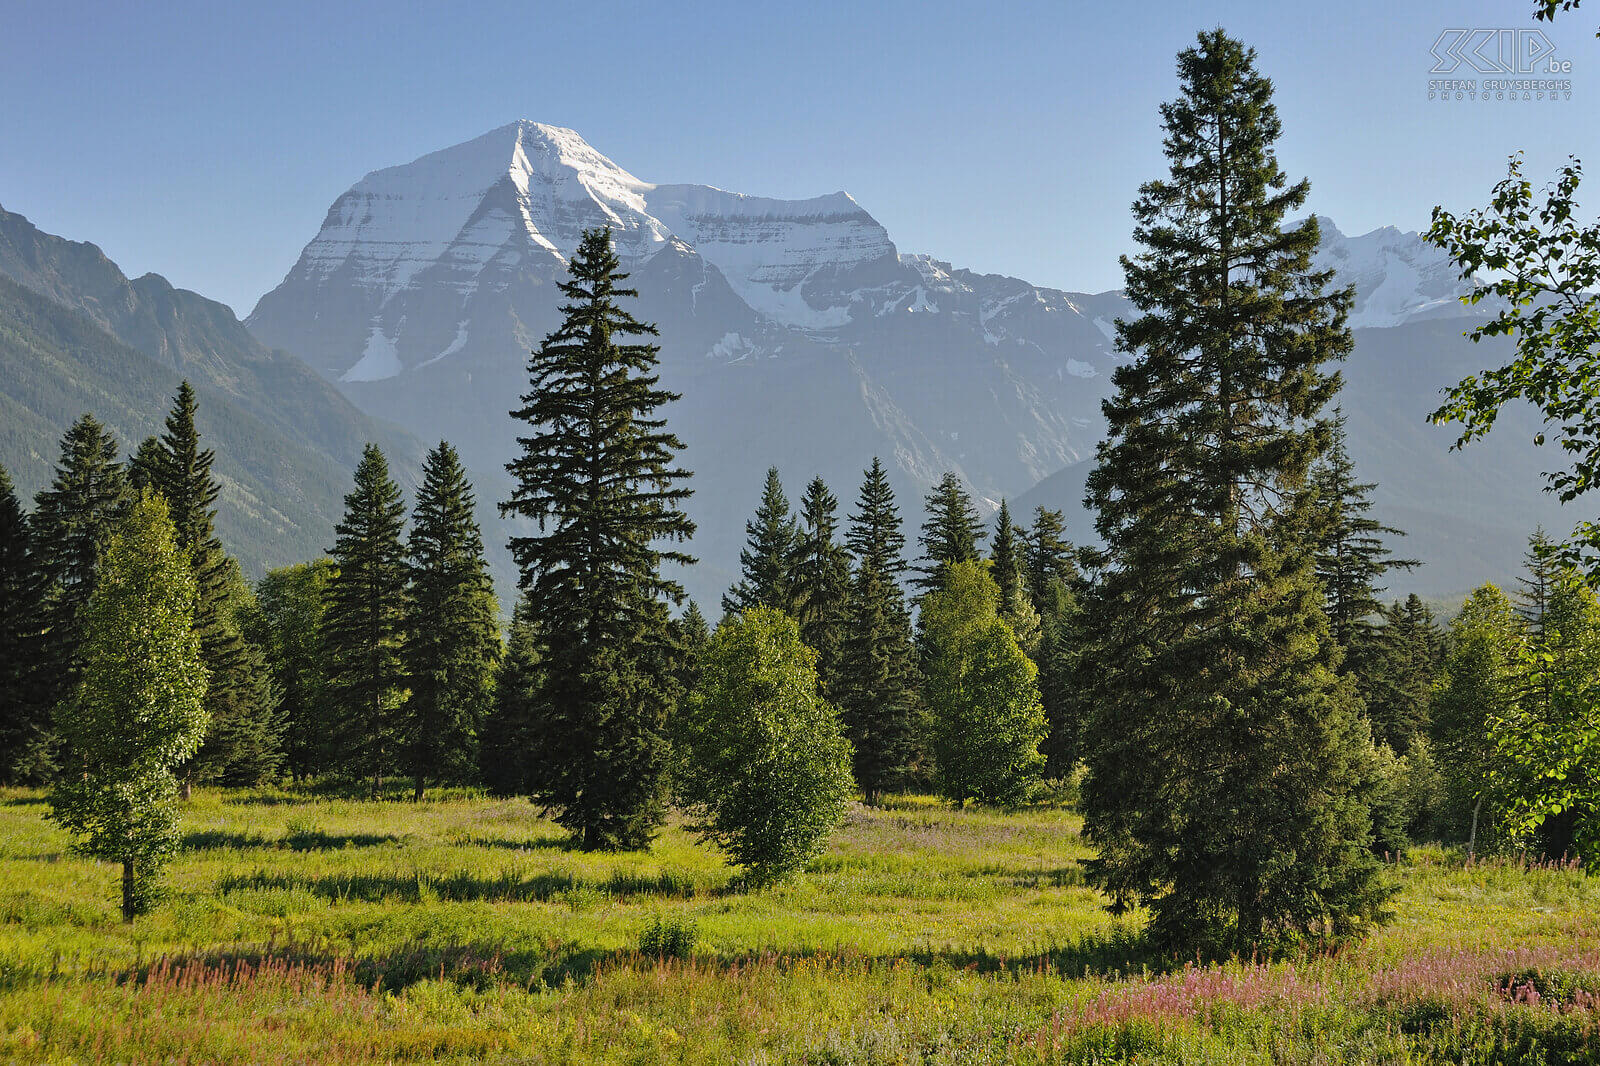 Mount Robson Mount Robson (3800m) is de hoogste berg van de Rocky Mountains en ligt in het gelijknamige provinciale park. Stefan Cruysberghs